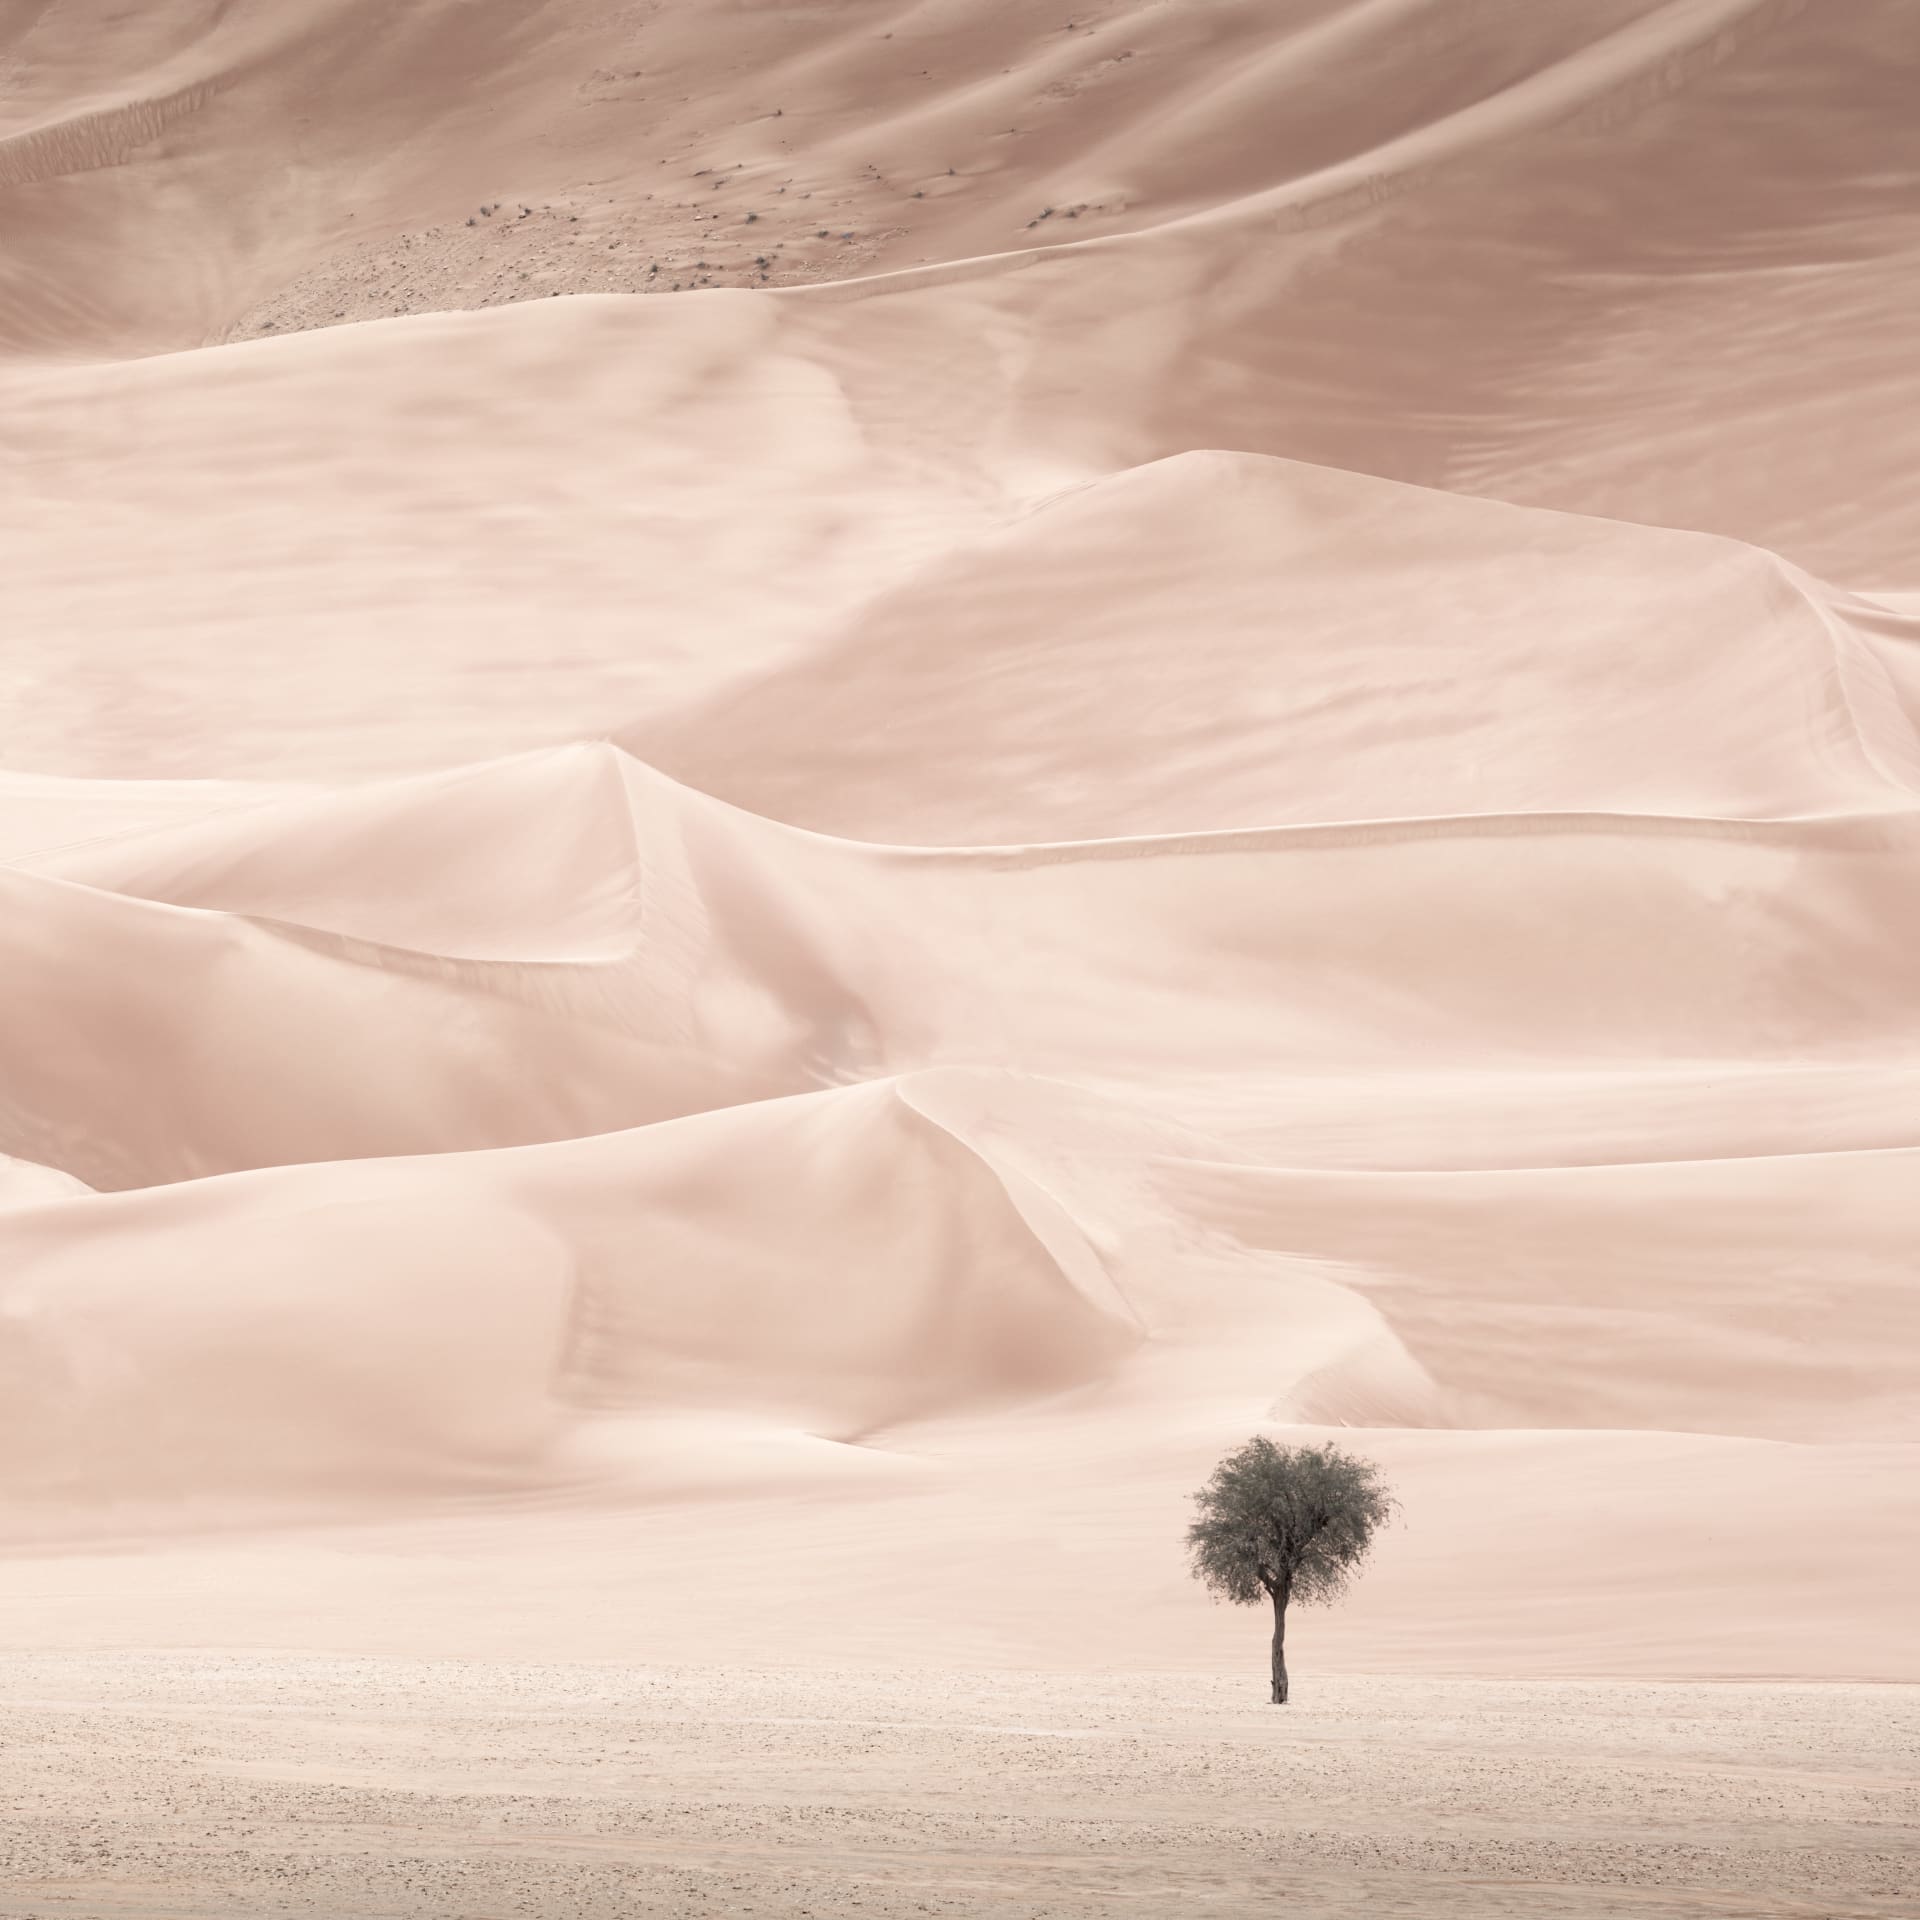 ظروف "لا ترحم".. مصور يروي تجربته وسط عاصفة ترابية بصحراء الإمارات سعيا لهذه الصور الساحرة